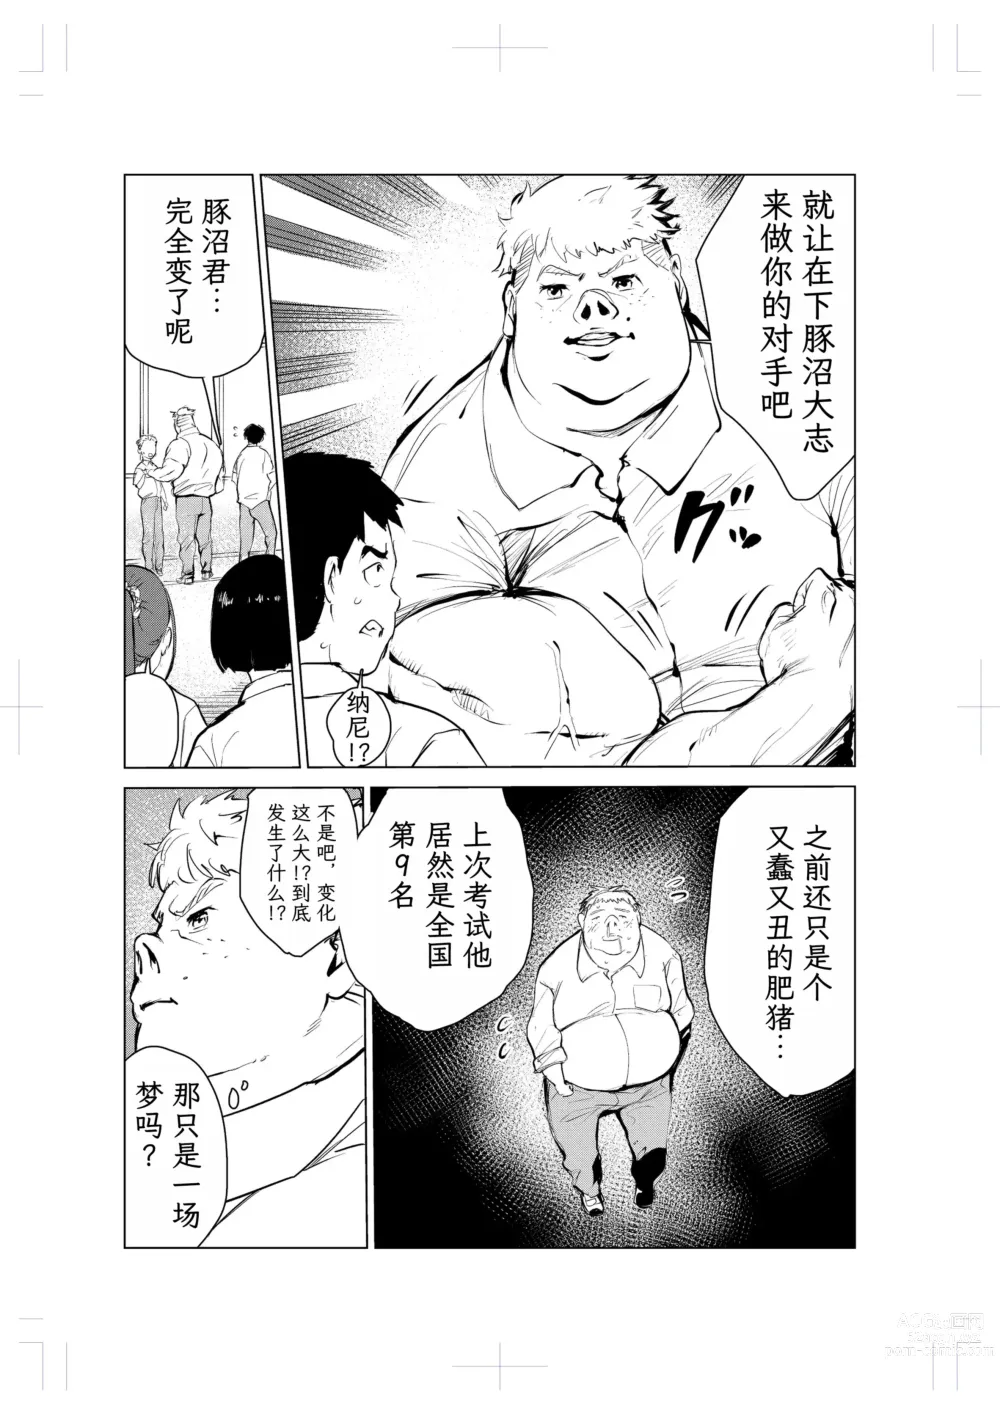 Page 73 of doujinshi 40-sai no Mahoutsukai 2